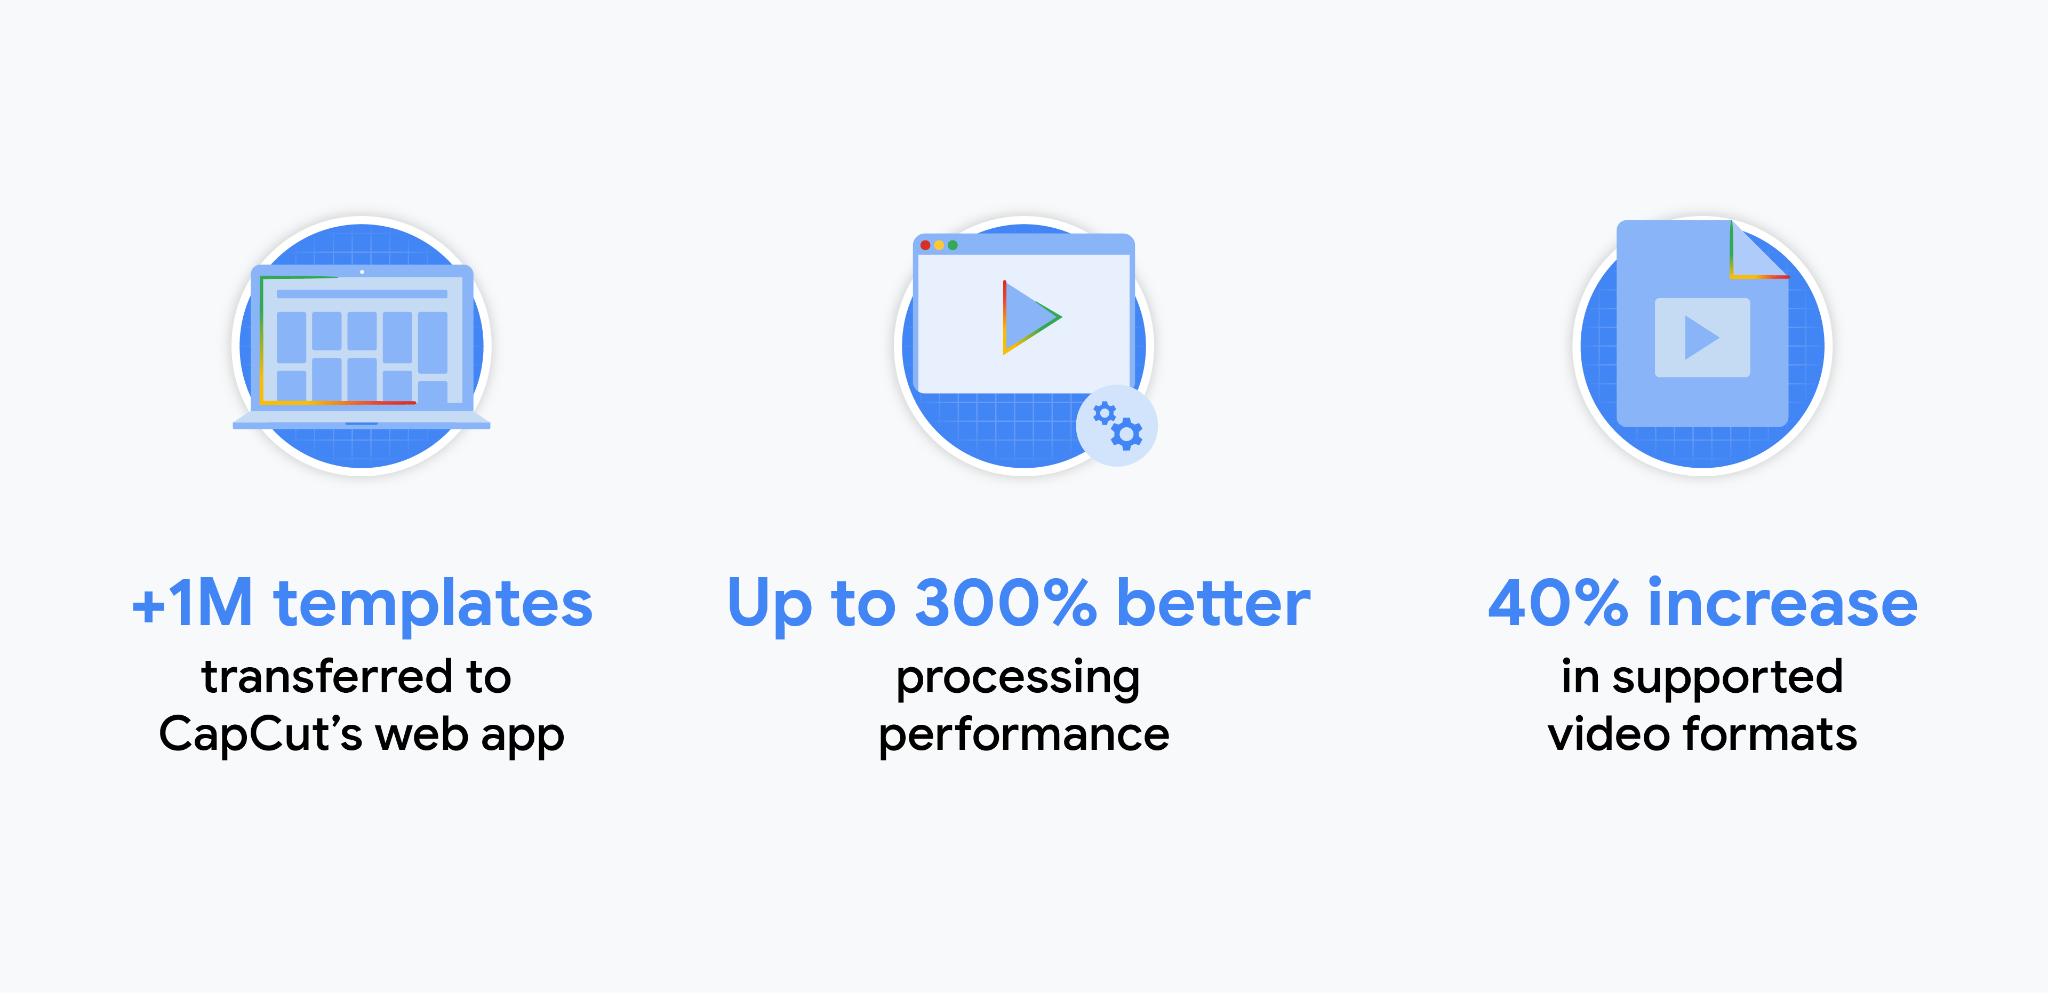 สถิติเกี่ยวกับแอป CapCut: เทมเพลตมากกว่า 1 ล้านรายการโอนไปยังเว็บแอปของ CapCut แล้ว ประสิทธิภาพการประมวลผลที่ดีขึ้นถึง 300% รูปแบบวิดีโอที่รองรับเพิ่มขึ้น 40%